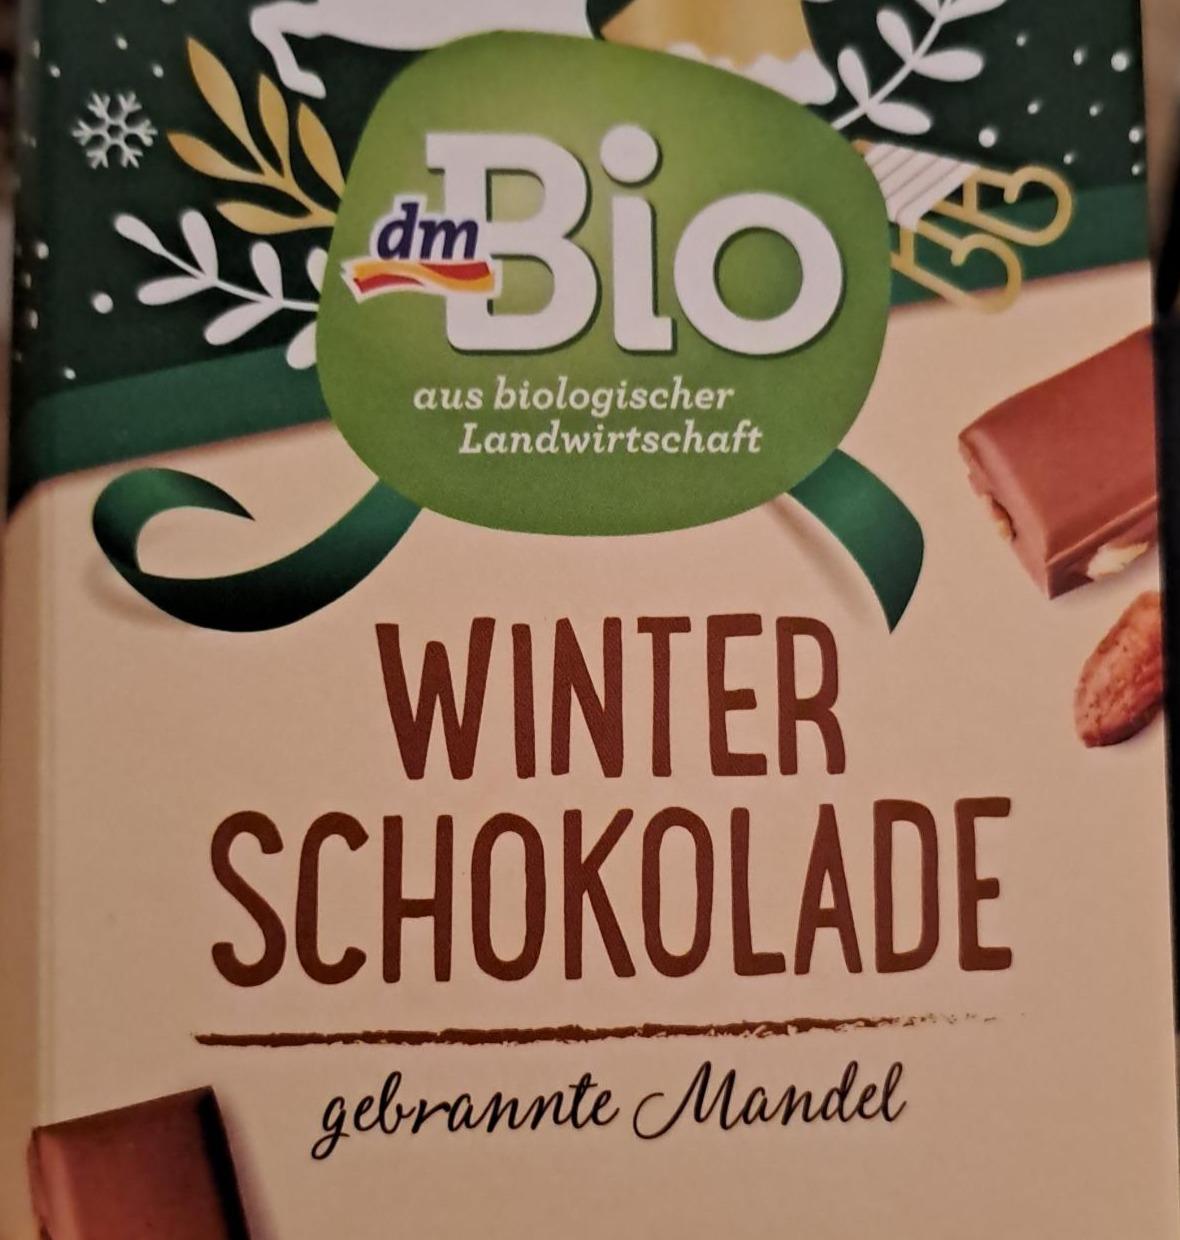 Fotografie - Winter Schokolade gebrannte Mandel dmBio